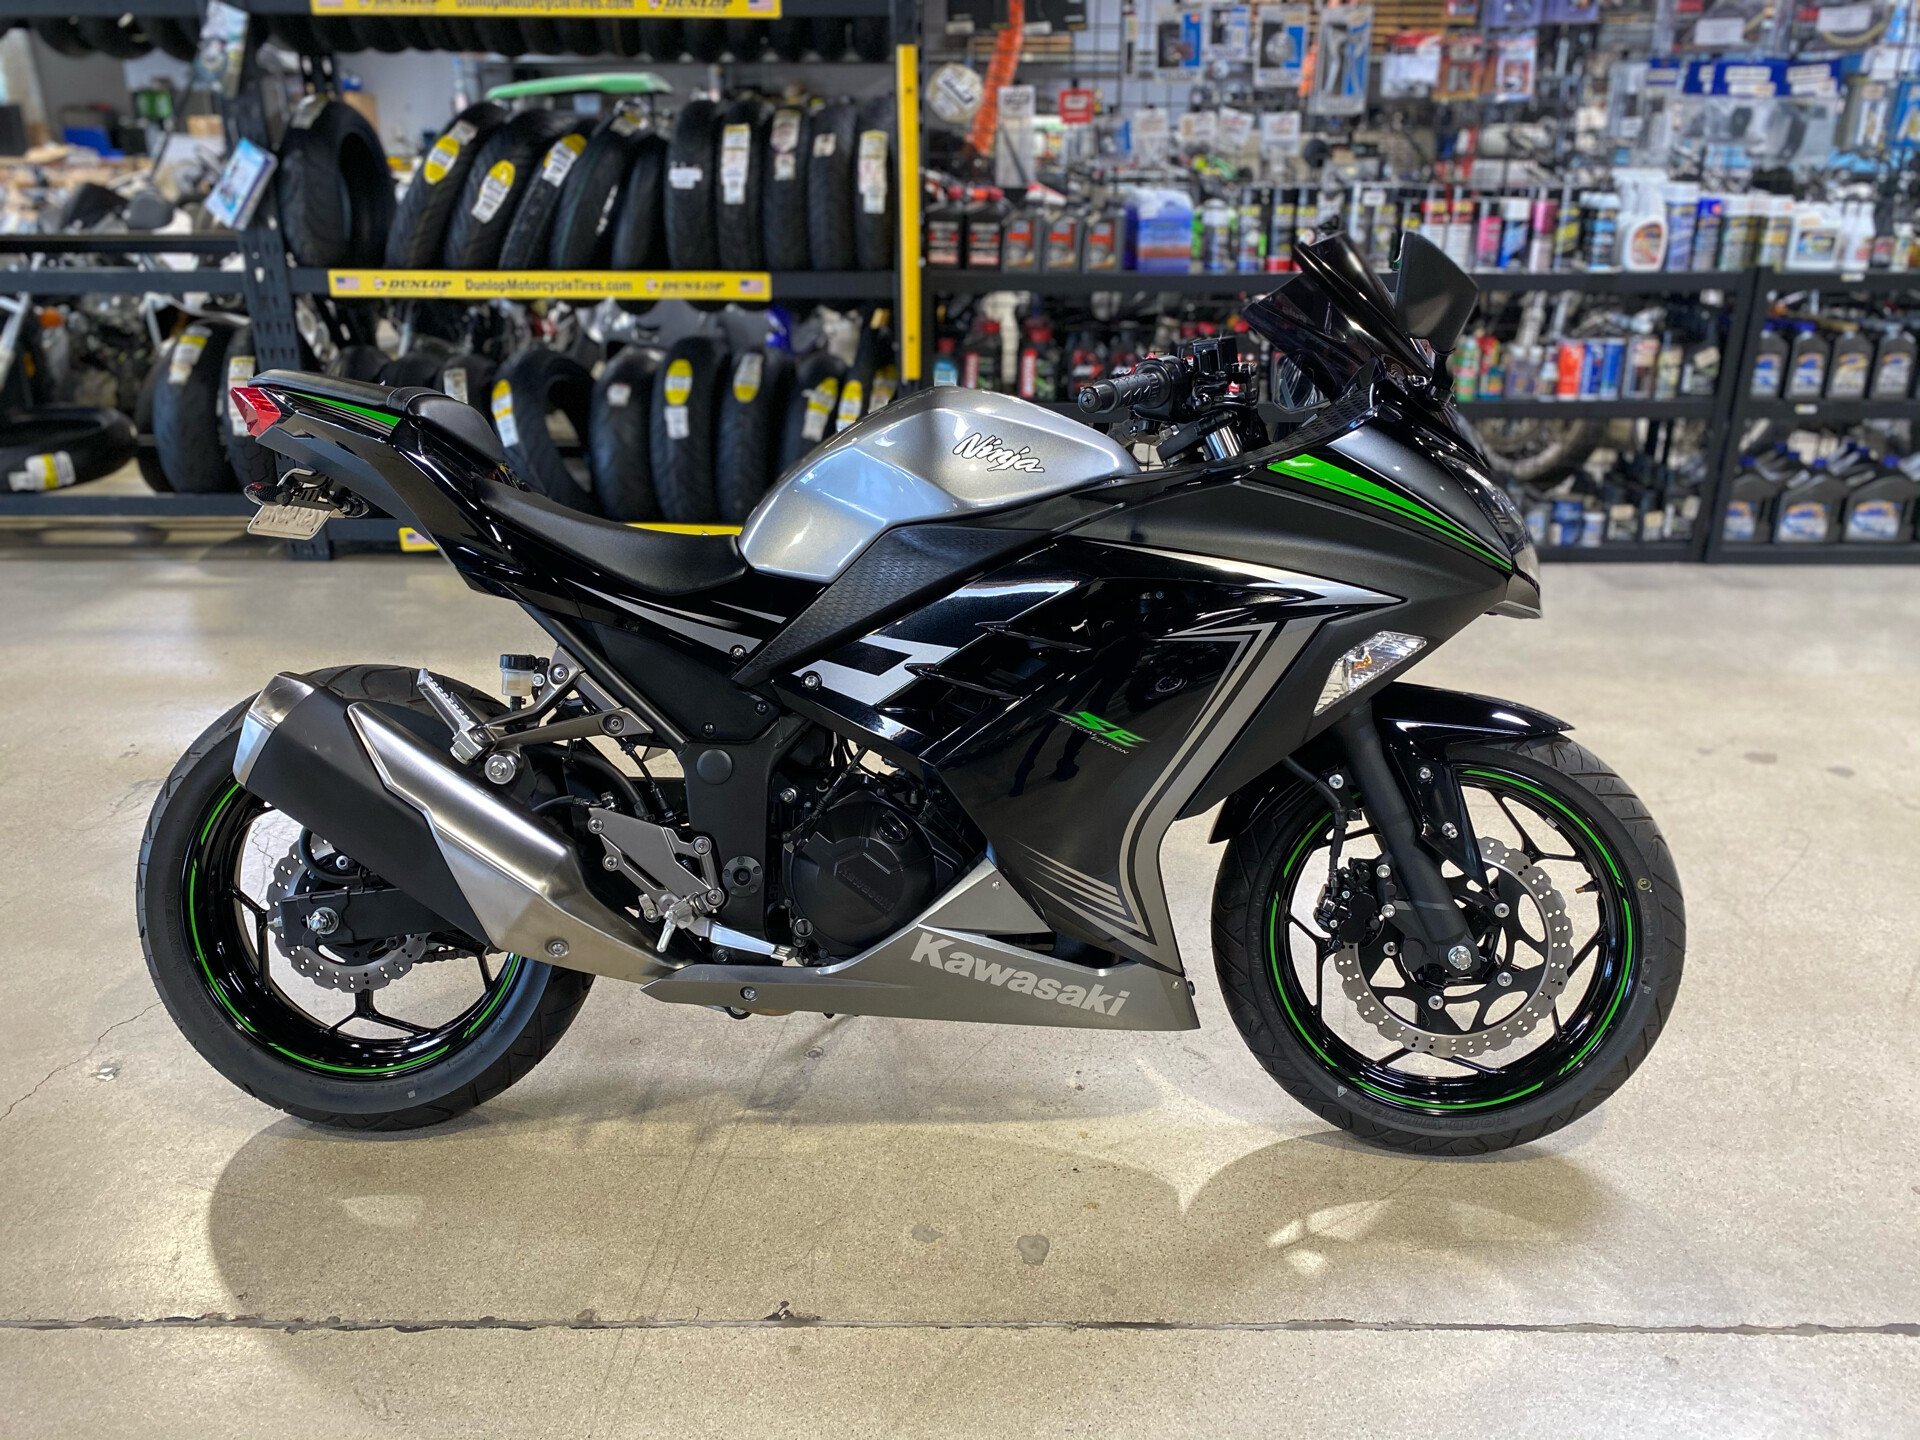 Kawasaki Ninja 300 Motorcycles for Sale - Motorcycles Autotrader